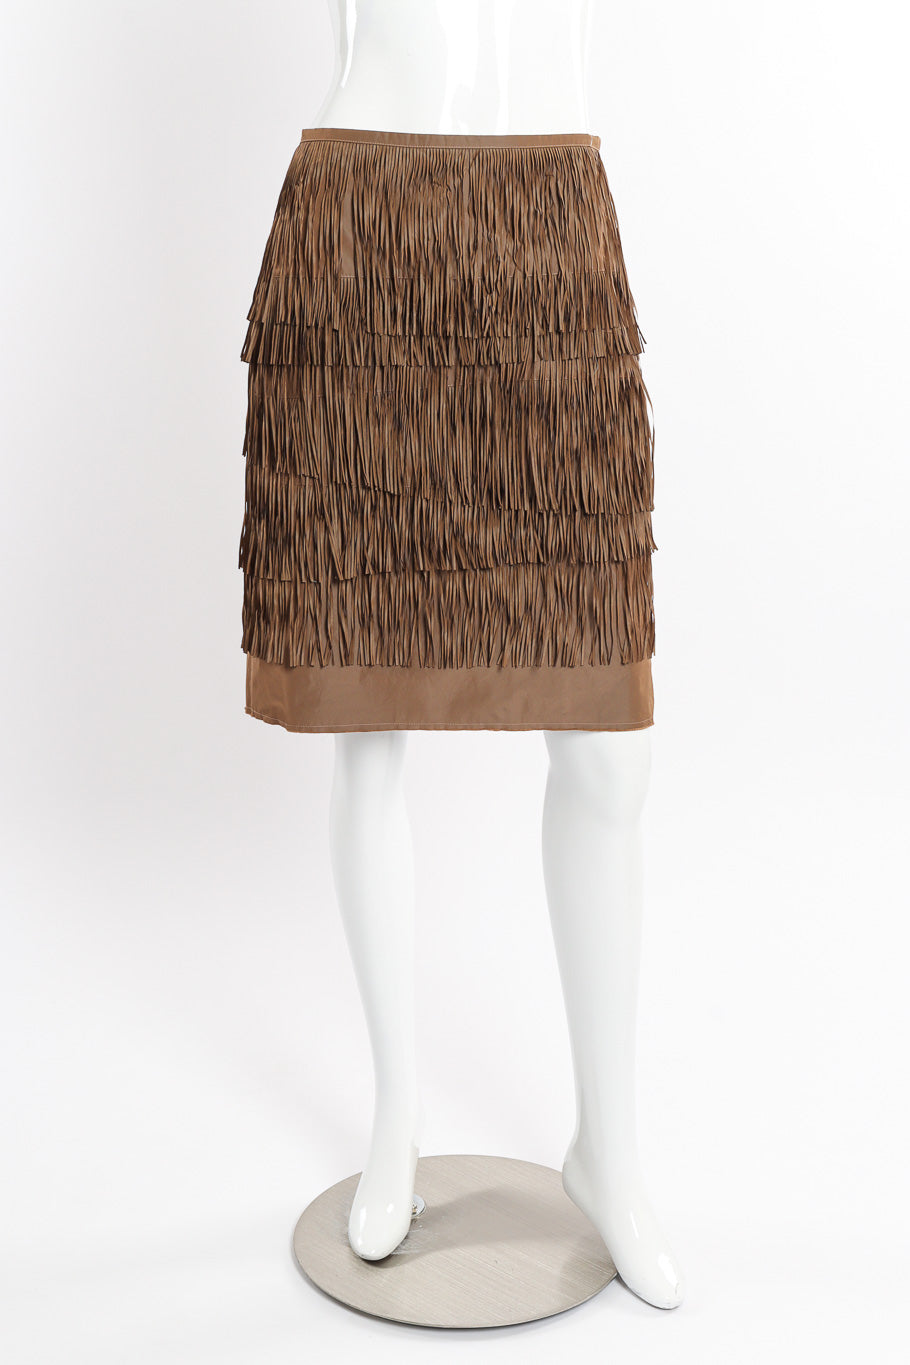 Vintage Lanvin Tiered Fringe Skirt front view on mannequin @recessla